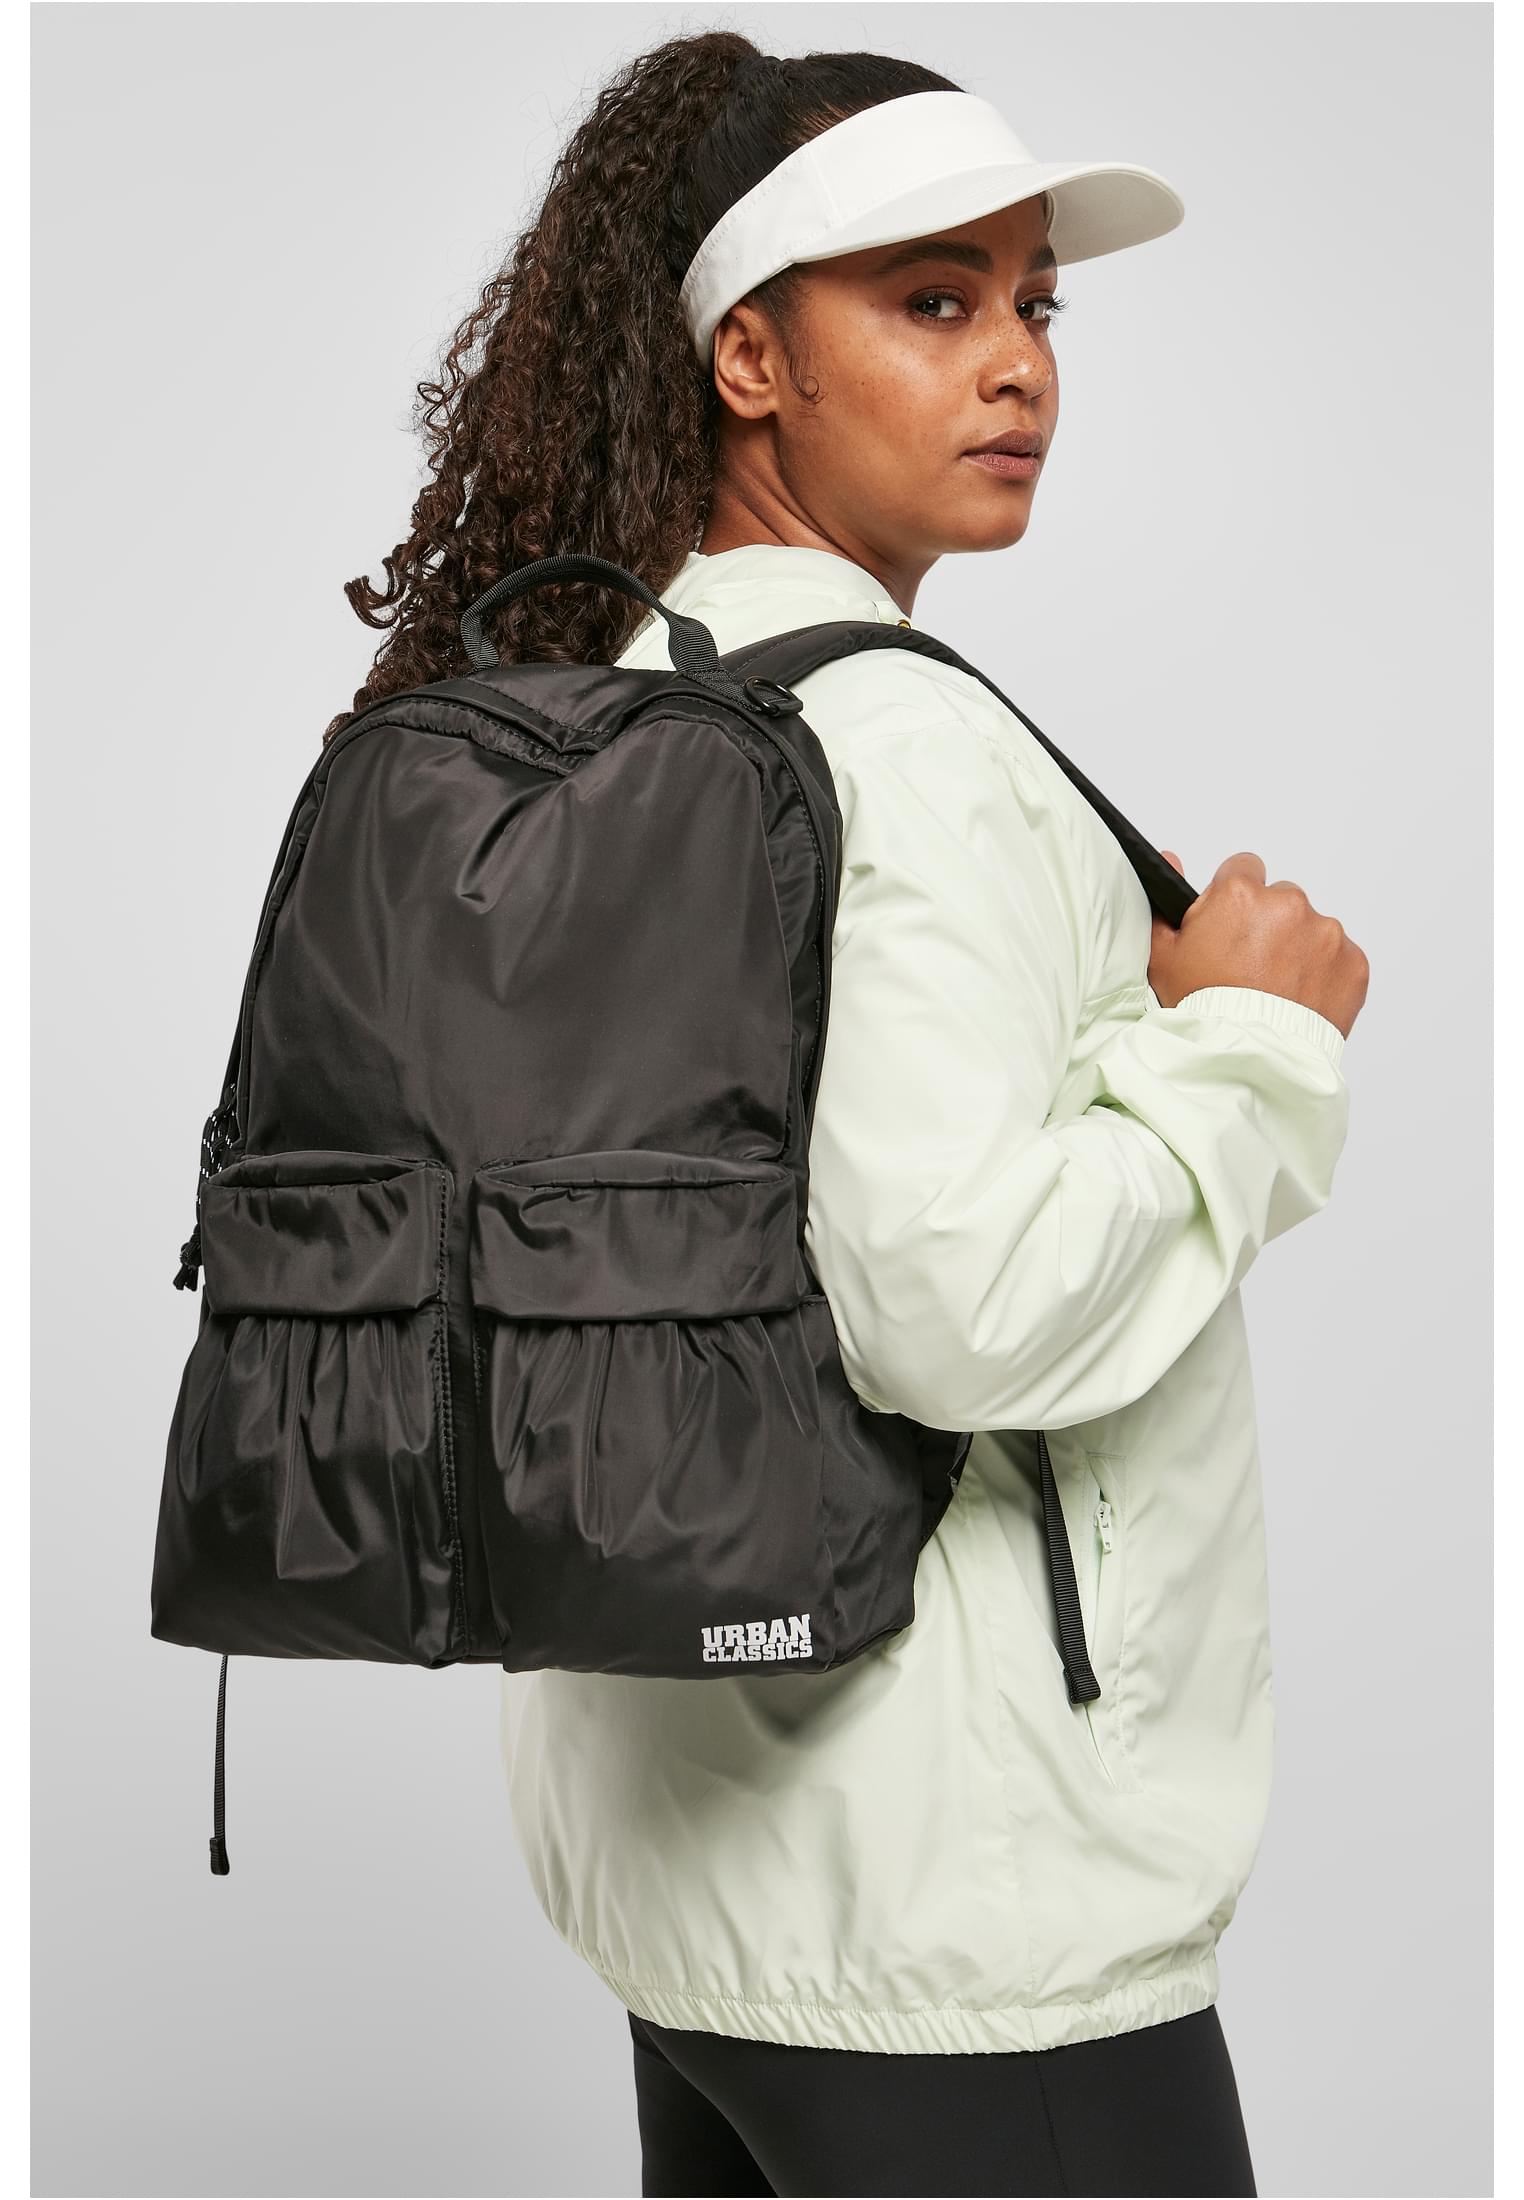 Multifunctional Backpack In Black